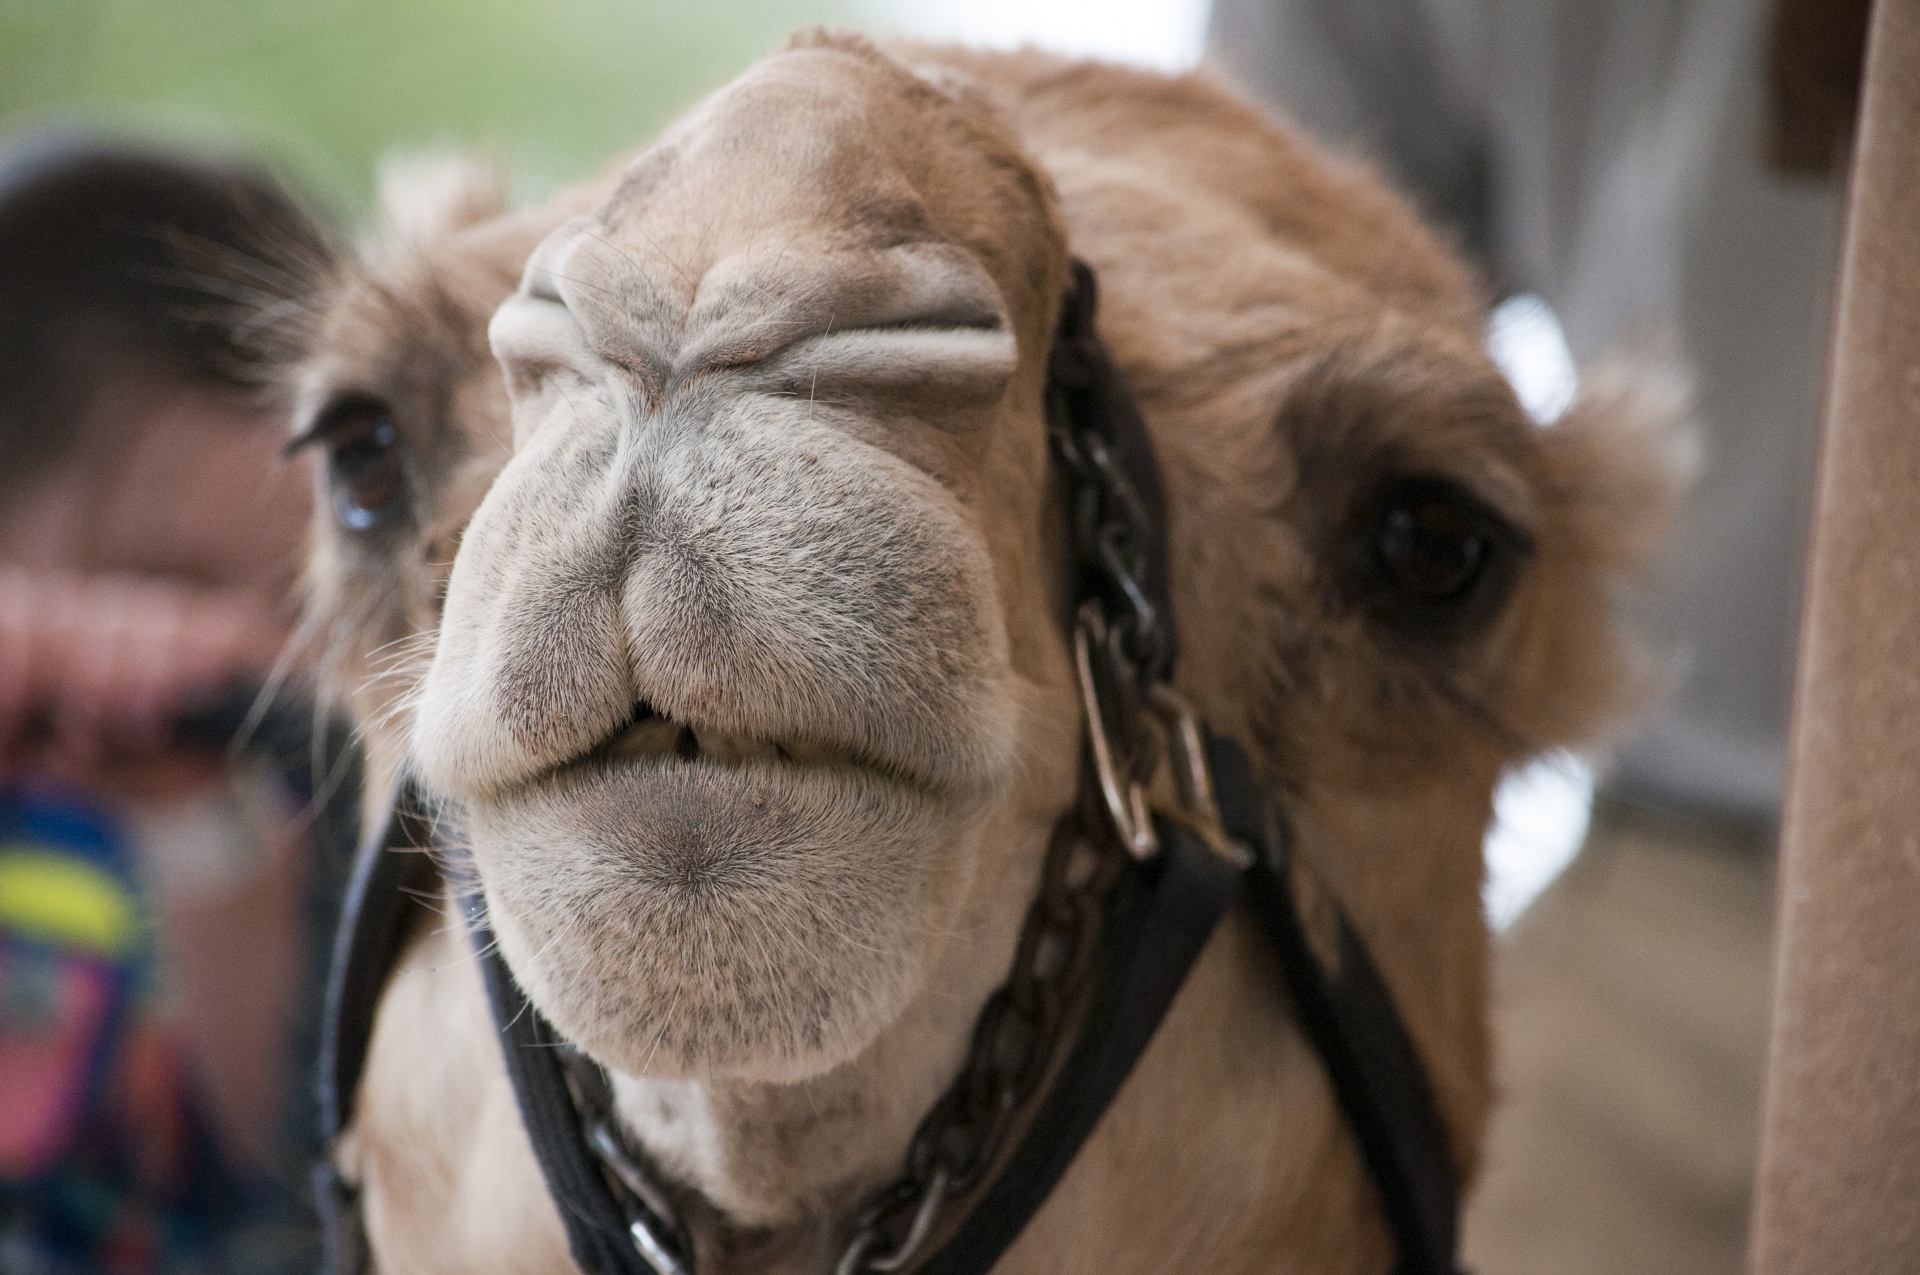 geico camel face